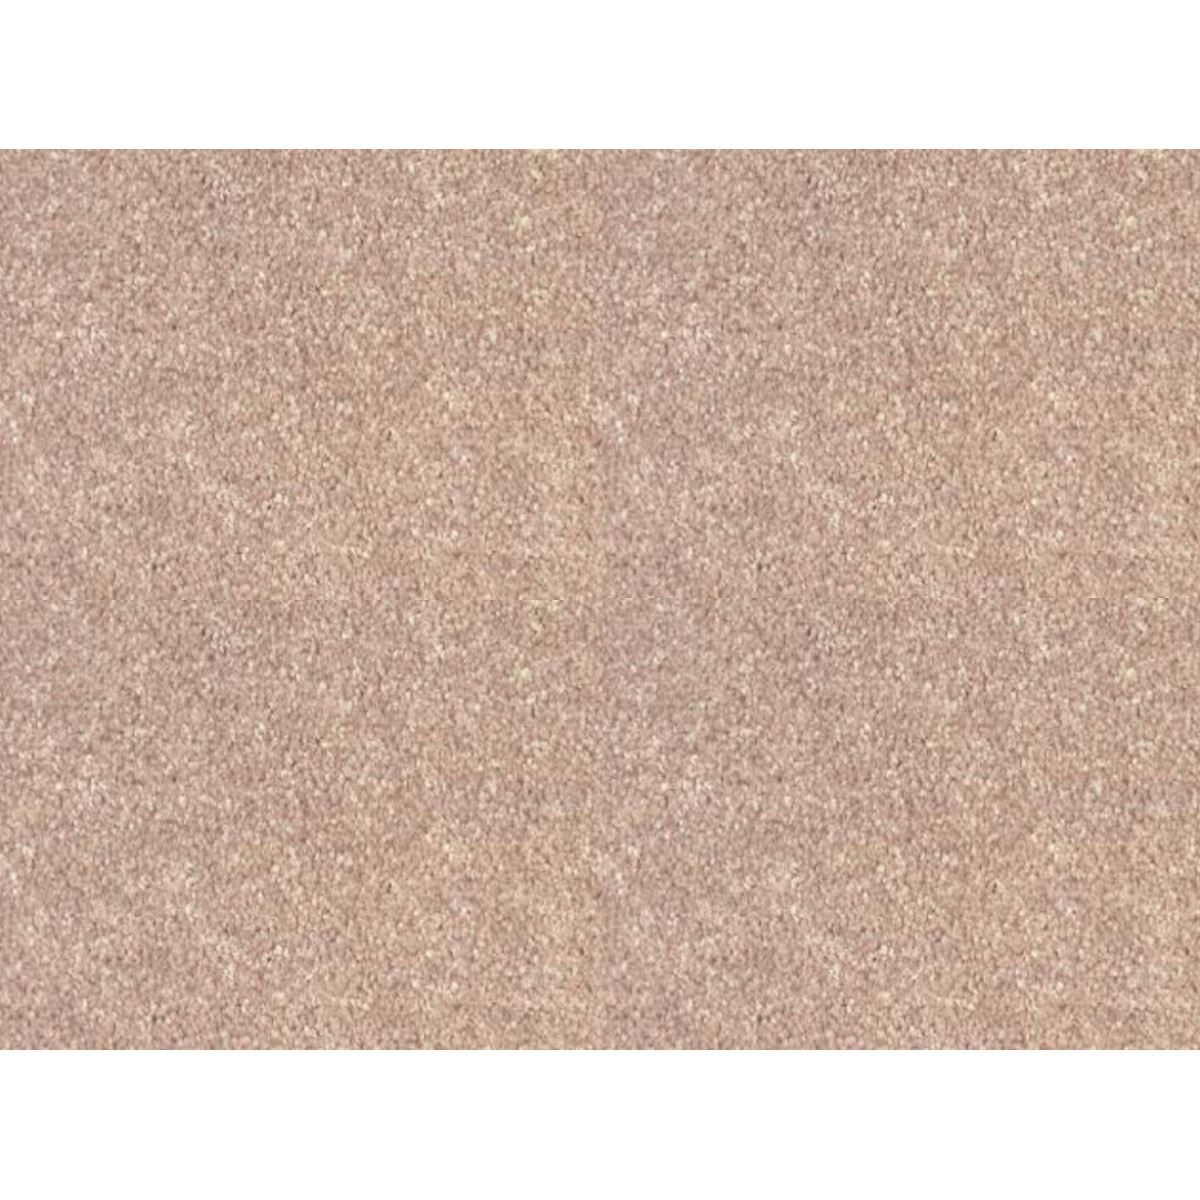 AKCE: 100x500 cm Metrážový koberec Tagil / 82131 sytě béžový